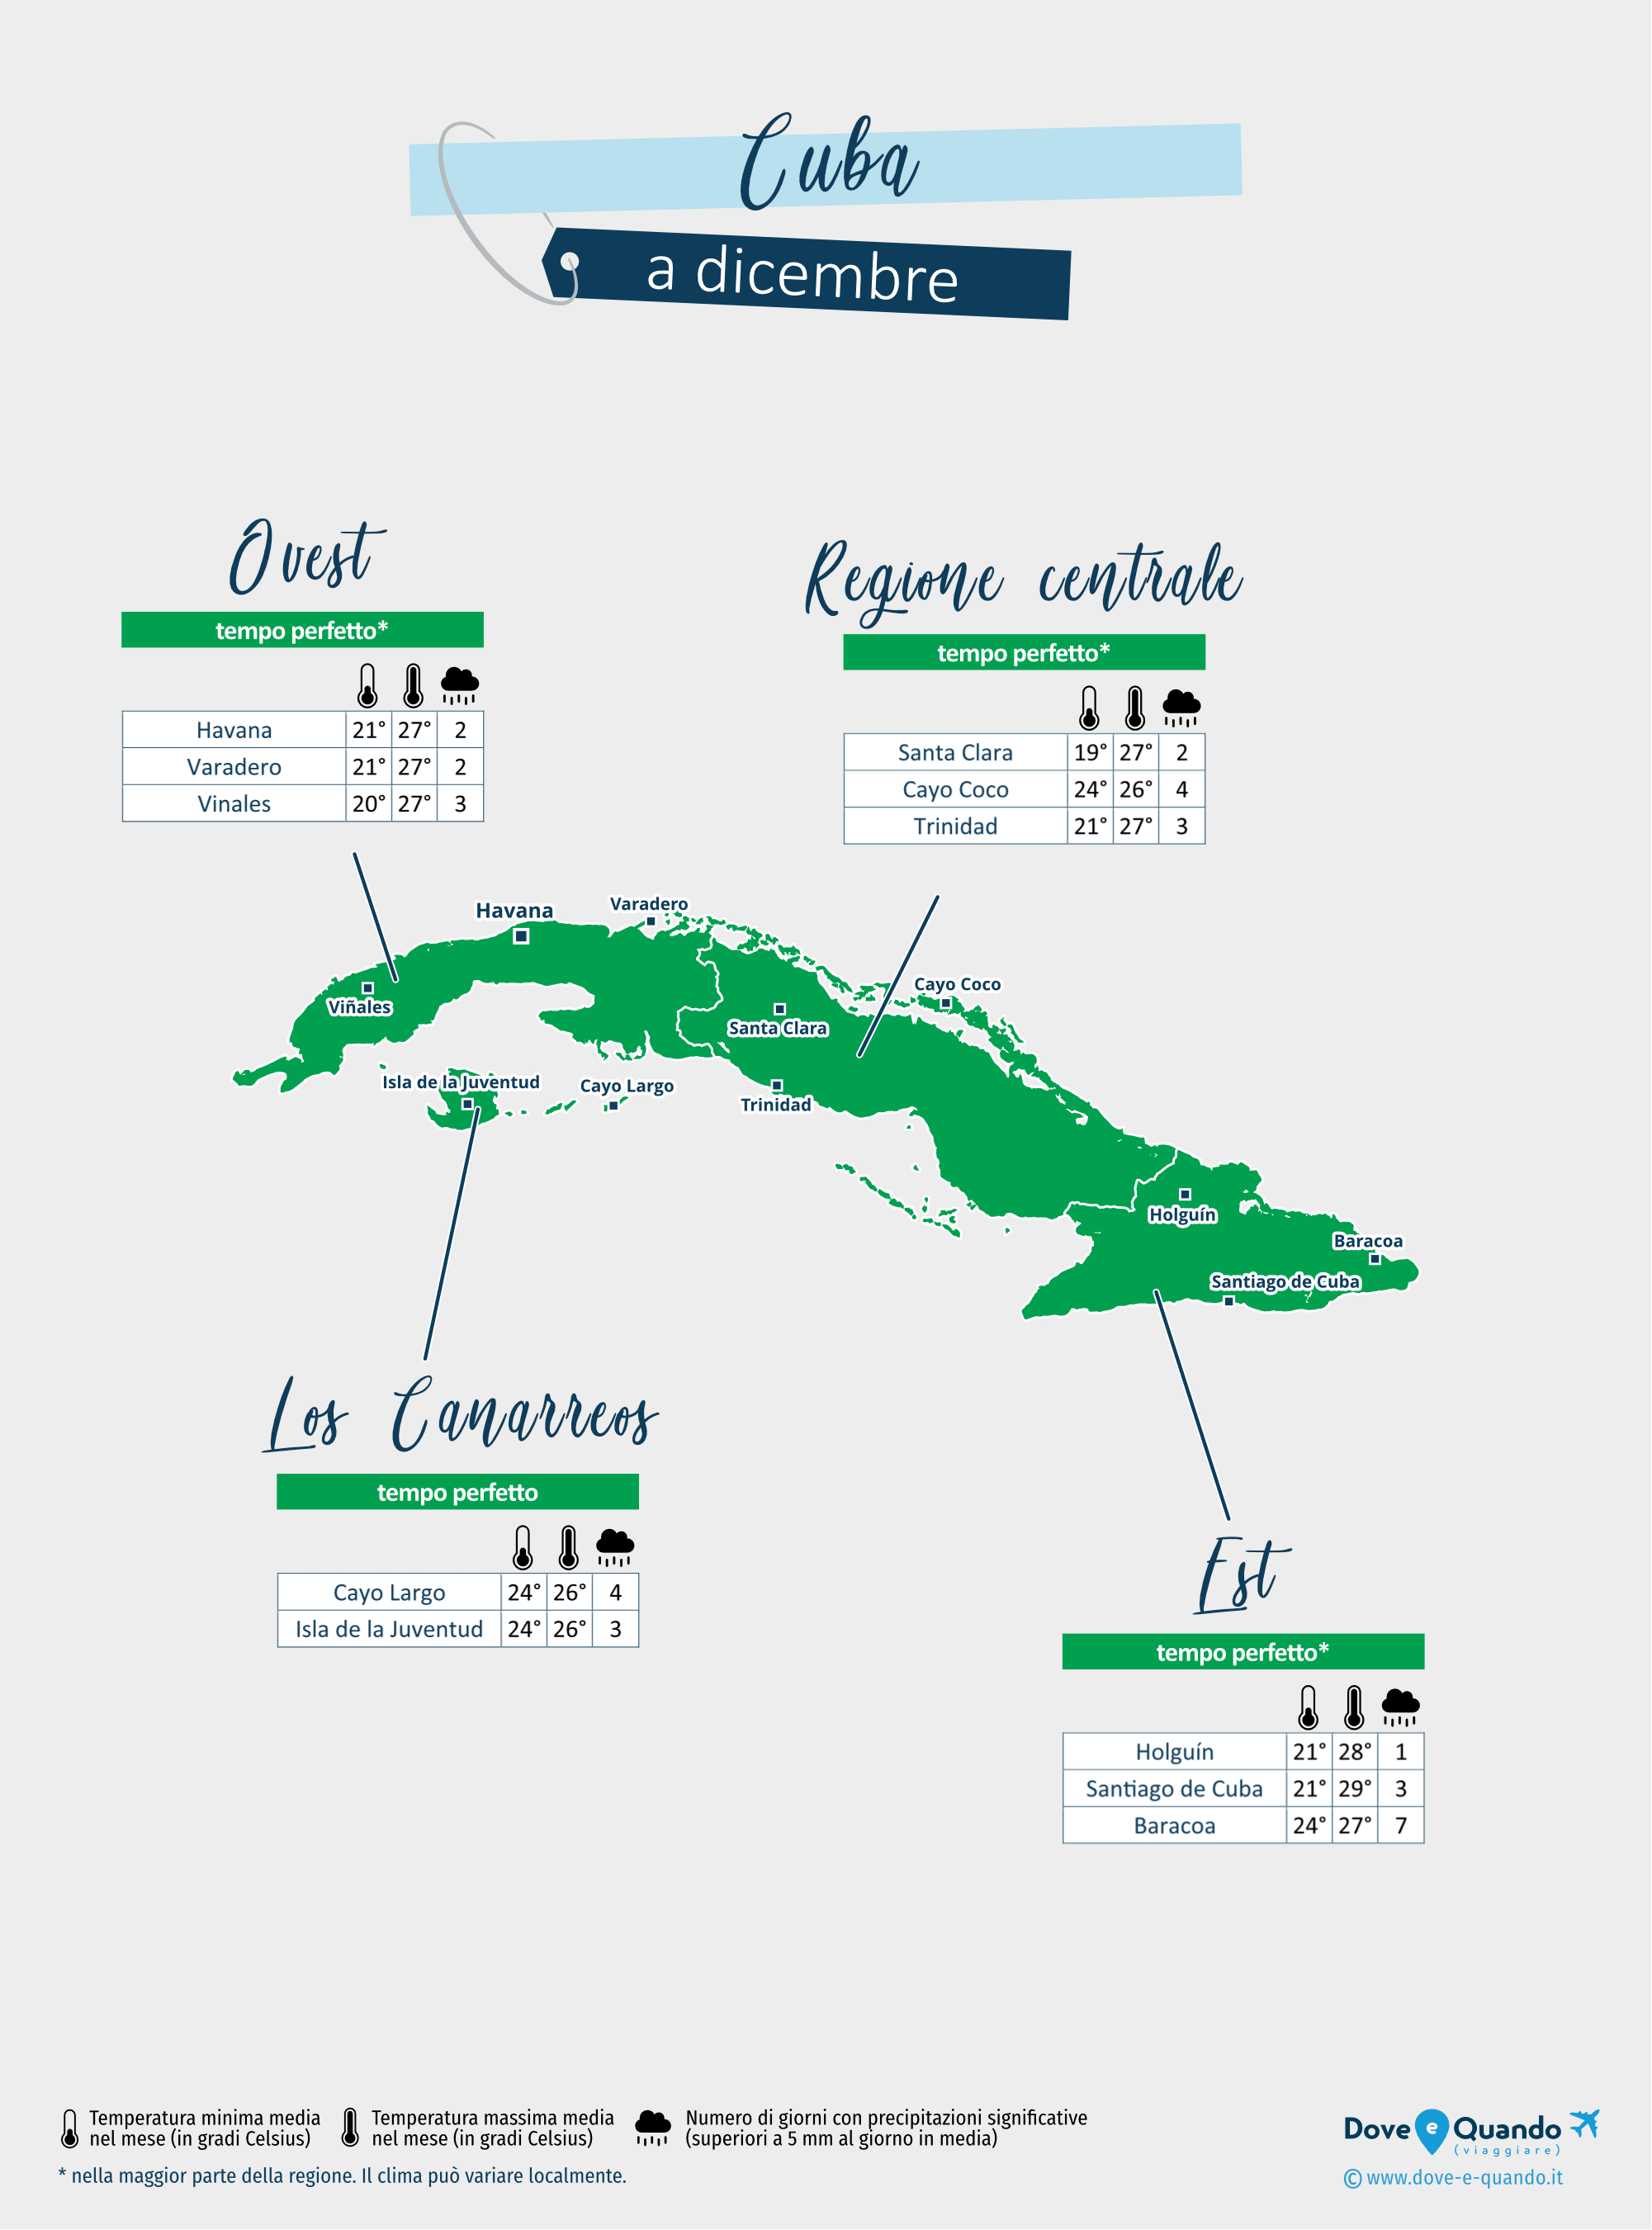 Cuba: mappa del meteo a dicembre nelle diverse regioni